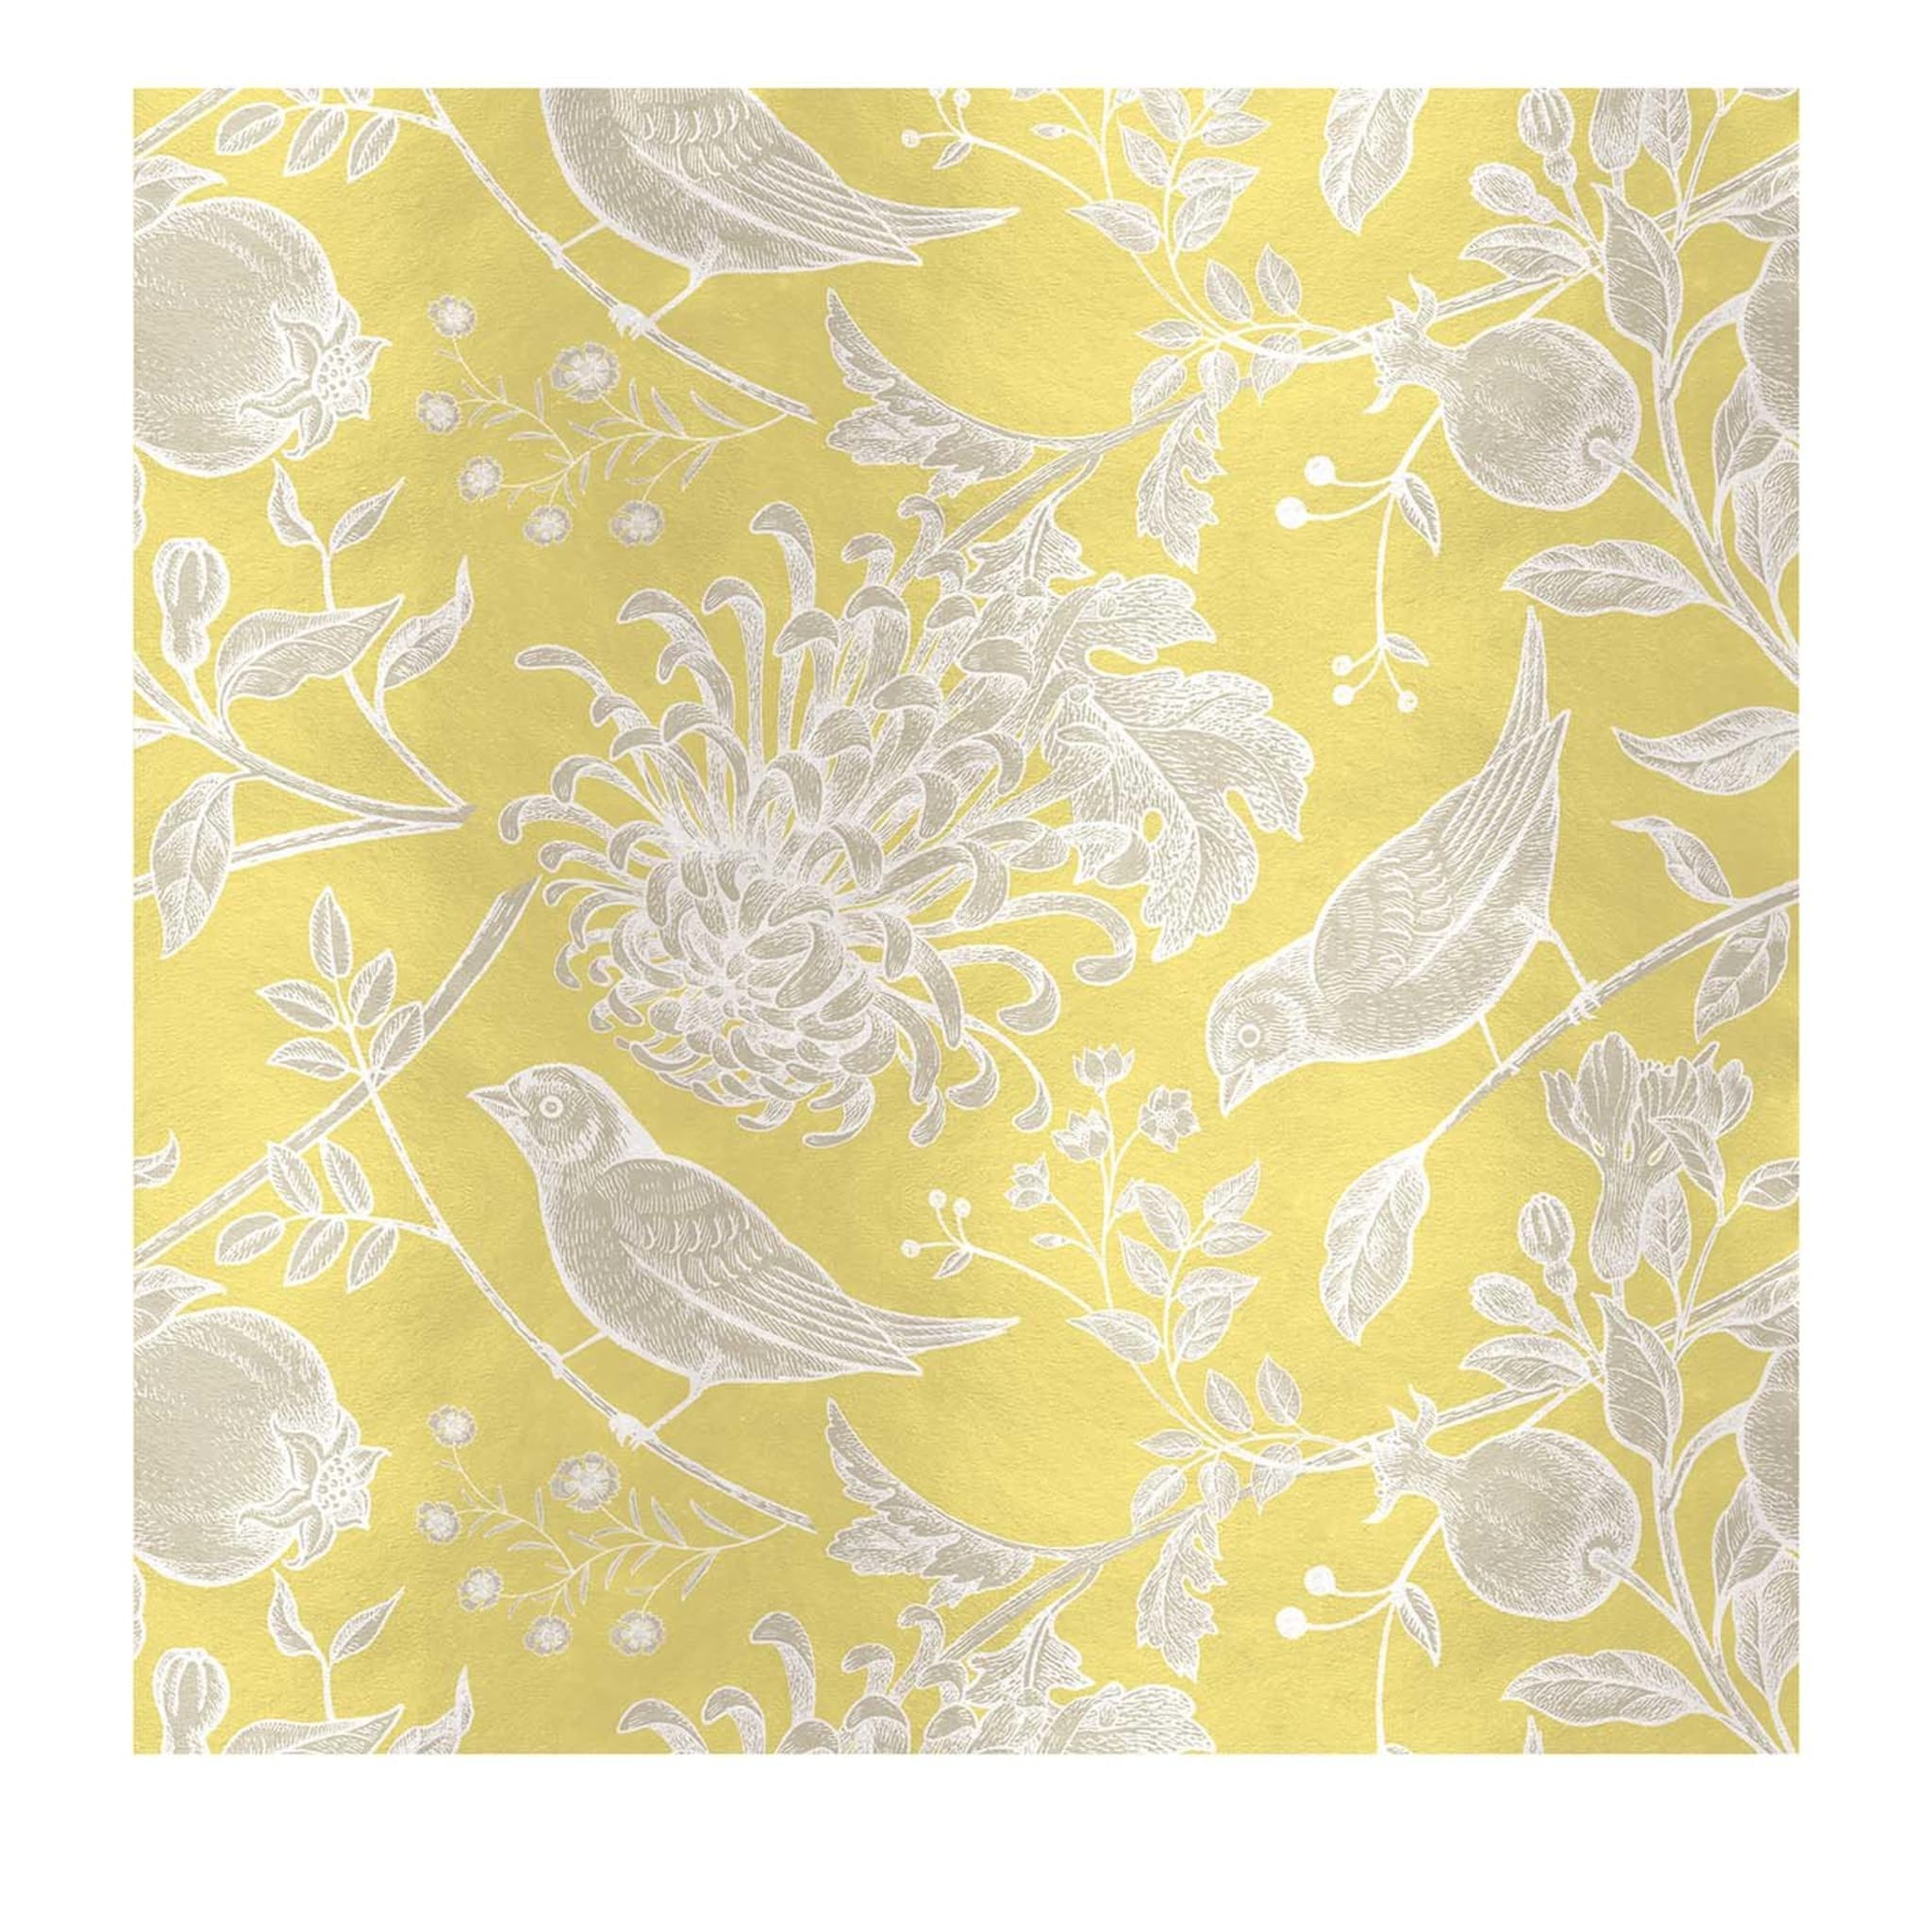 Pannello giallo con fiori e uccelli - Vista principale